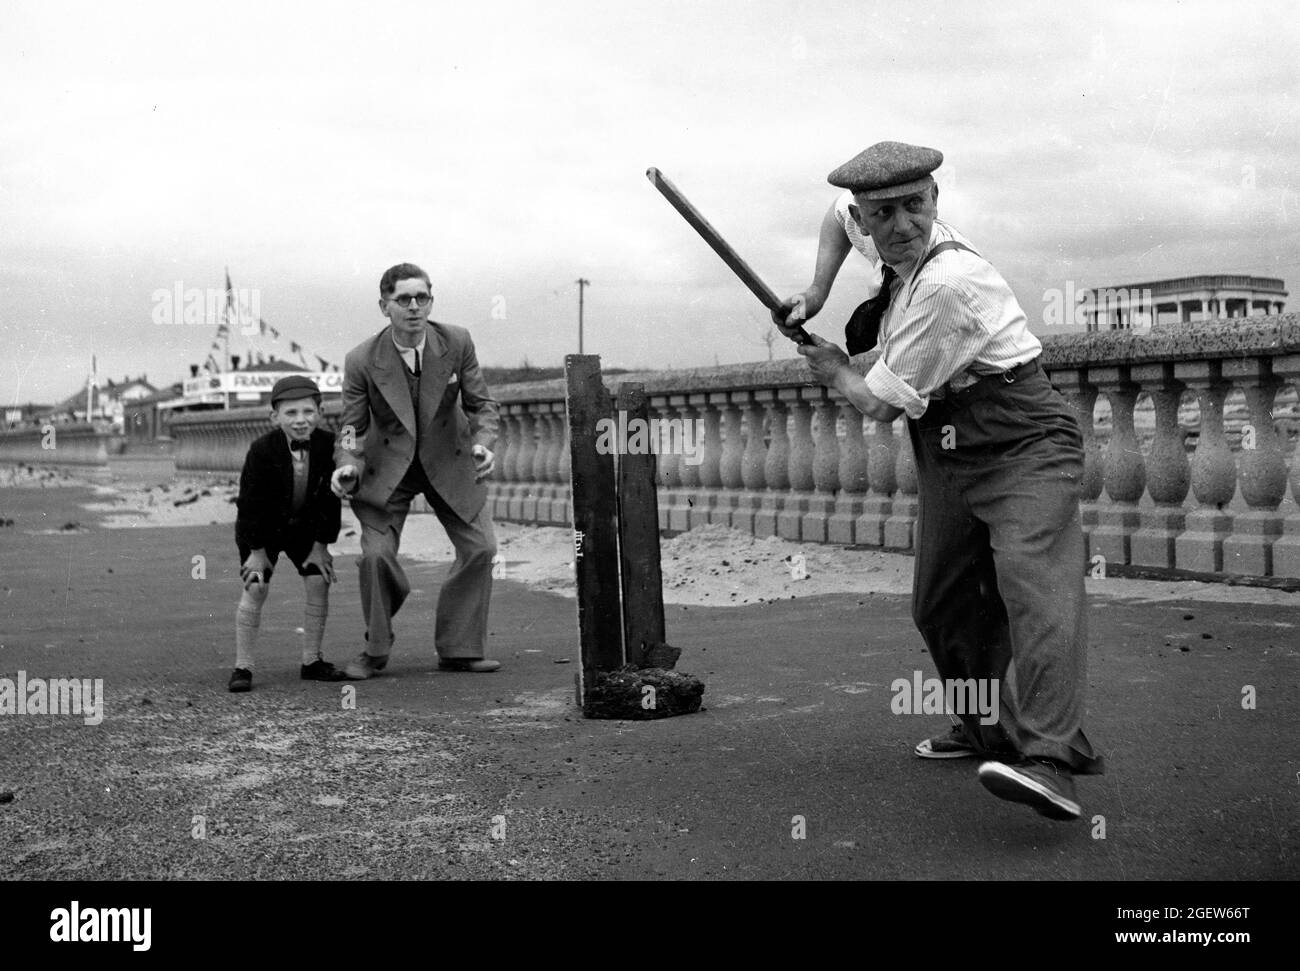 Familia jugando cricket improvisado en la costa de Gran Bretaña 1950s Foto de stock